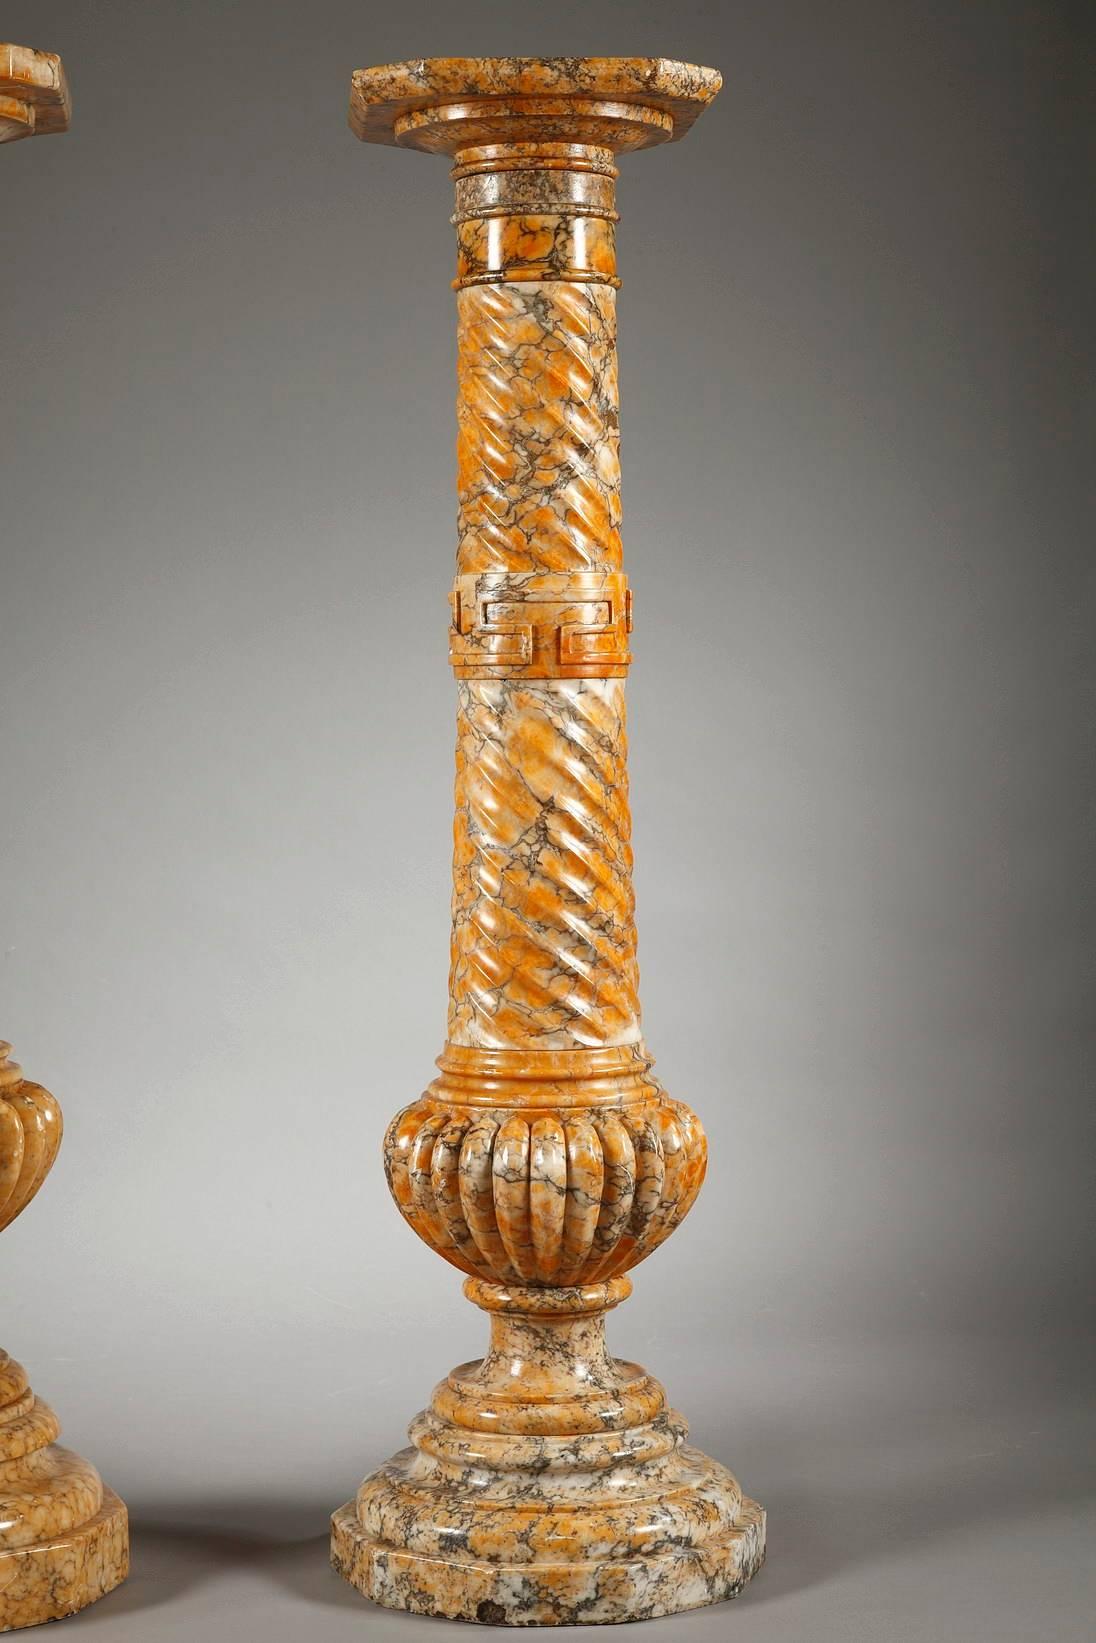 Two Spiraling Sienna Marble Columns (Spätes 19. Jahrhundert)